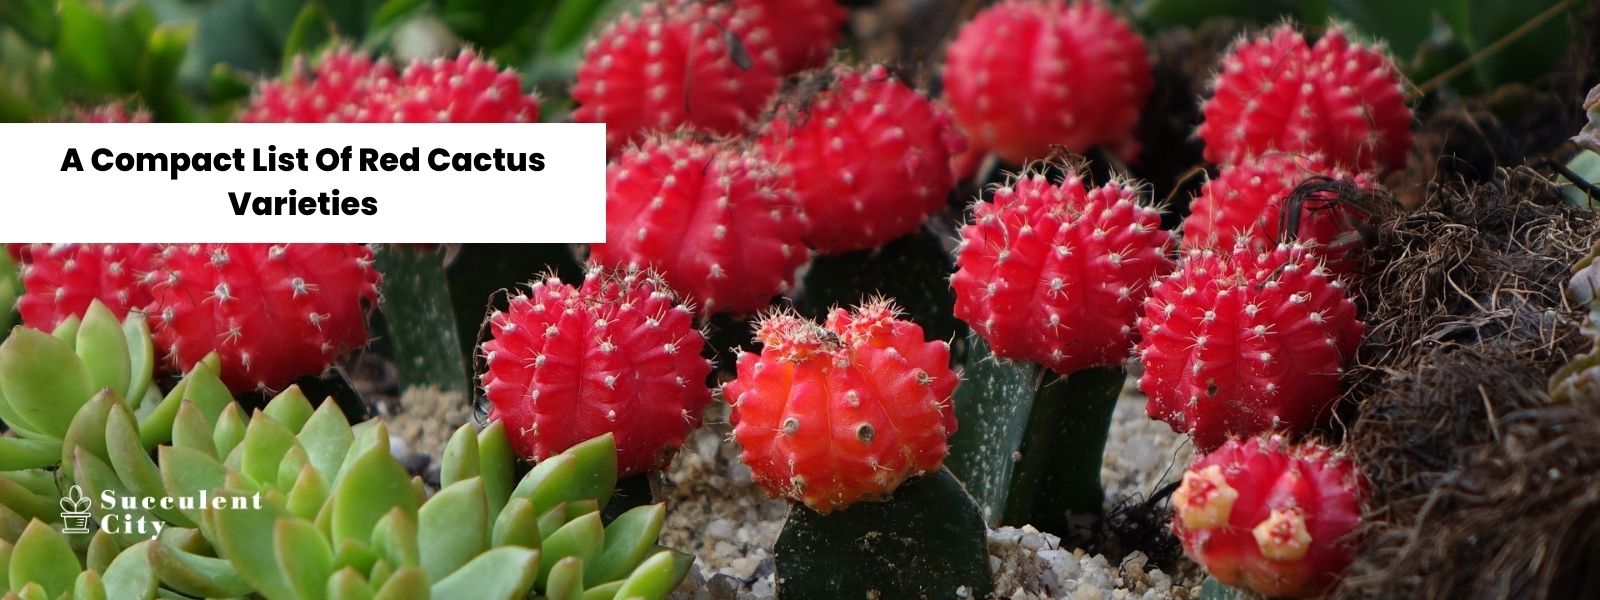 Una lista compacta de cactus rojos.